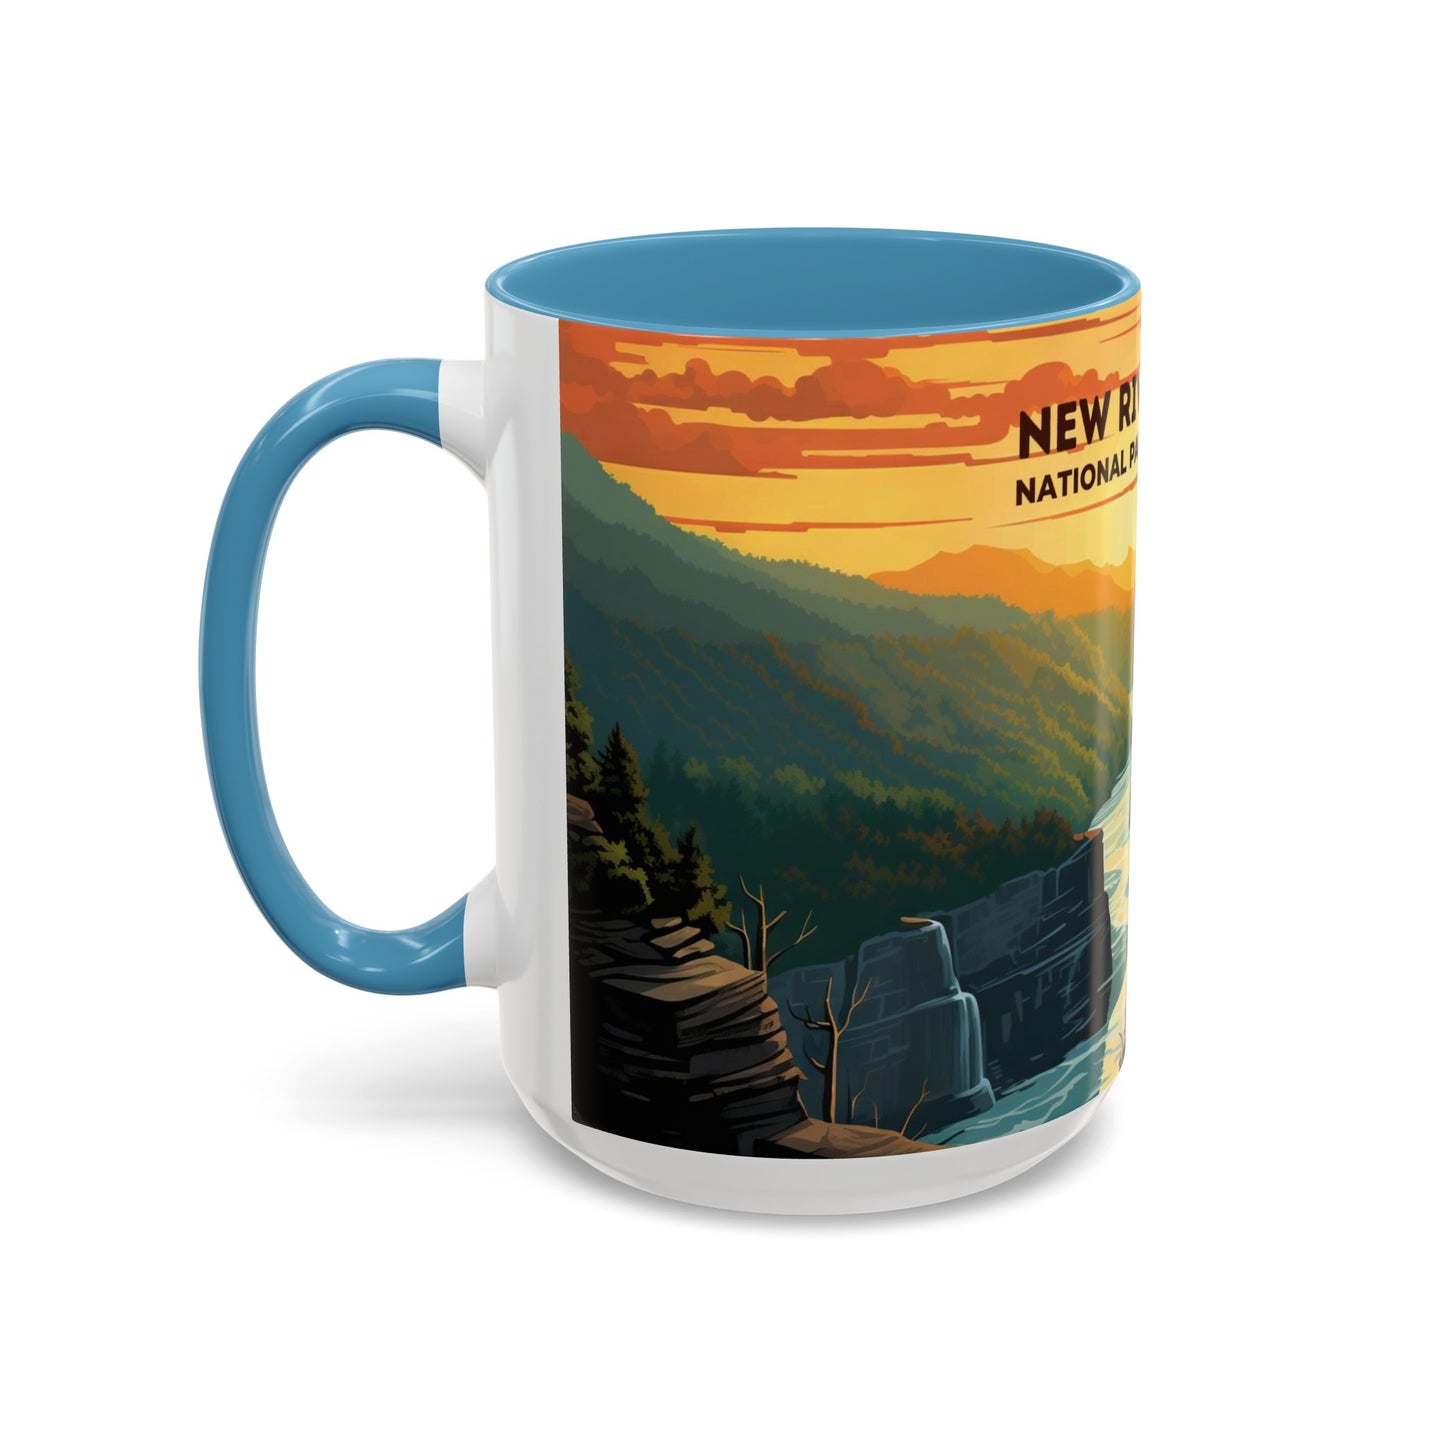 New River Gorge National Park Mug | Accent Coffee Mug (11, 15oz)